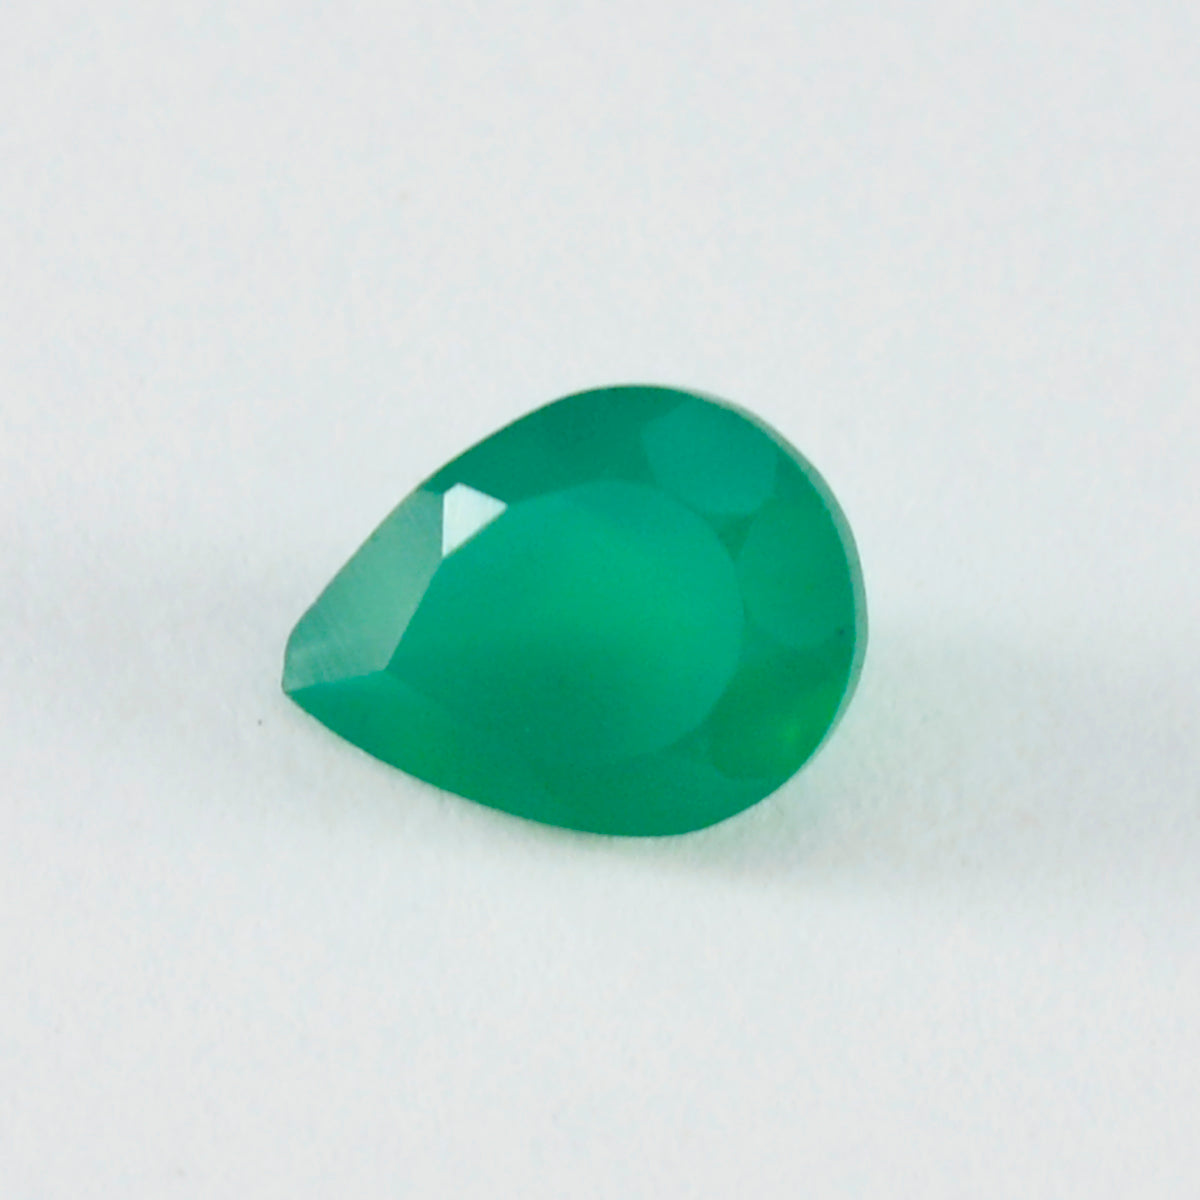 Riyogems 1 pièce d'onyx vert naturel à facettes 12x16mm en forme de poire, pierres précieuses en vrac de qualité aaa